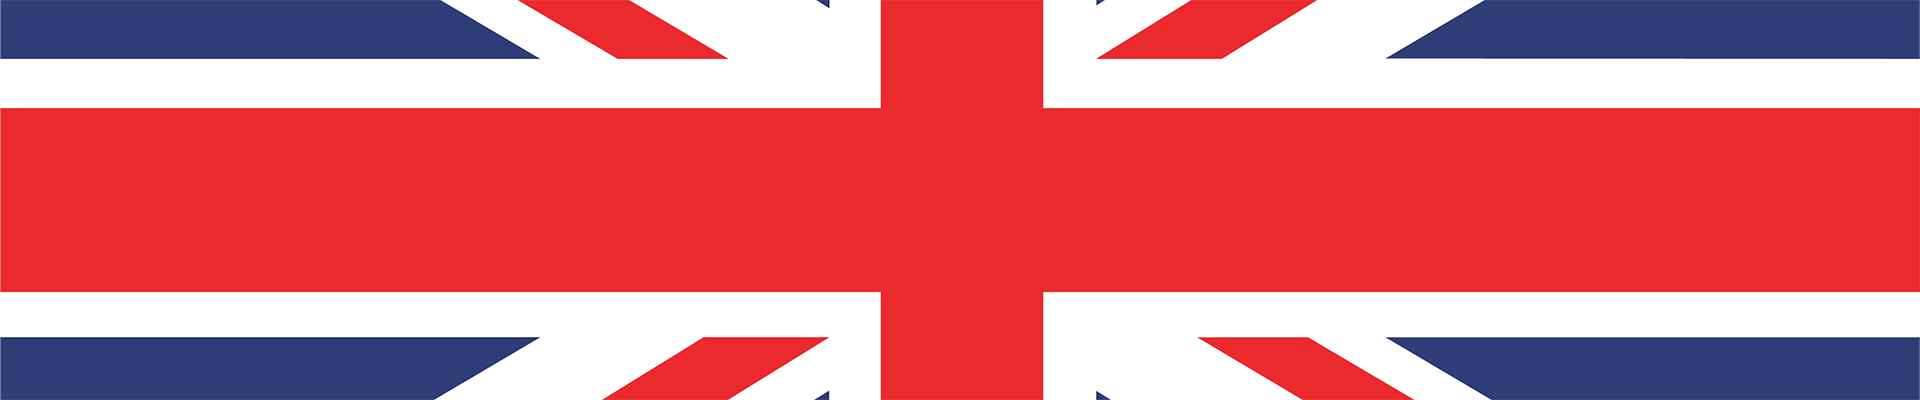 Hamburg Cyclassics Pro canlı yayın — İngiliz bayrağı